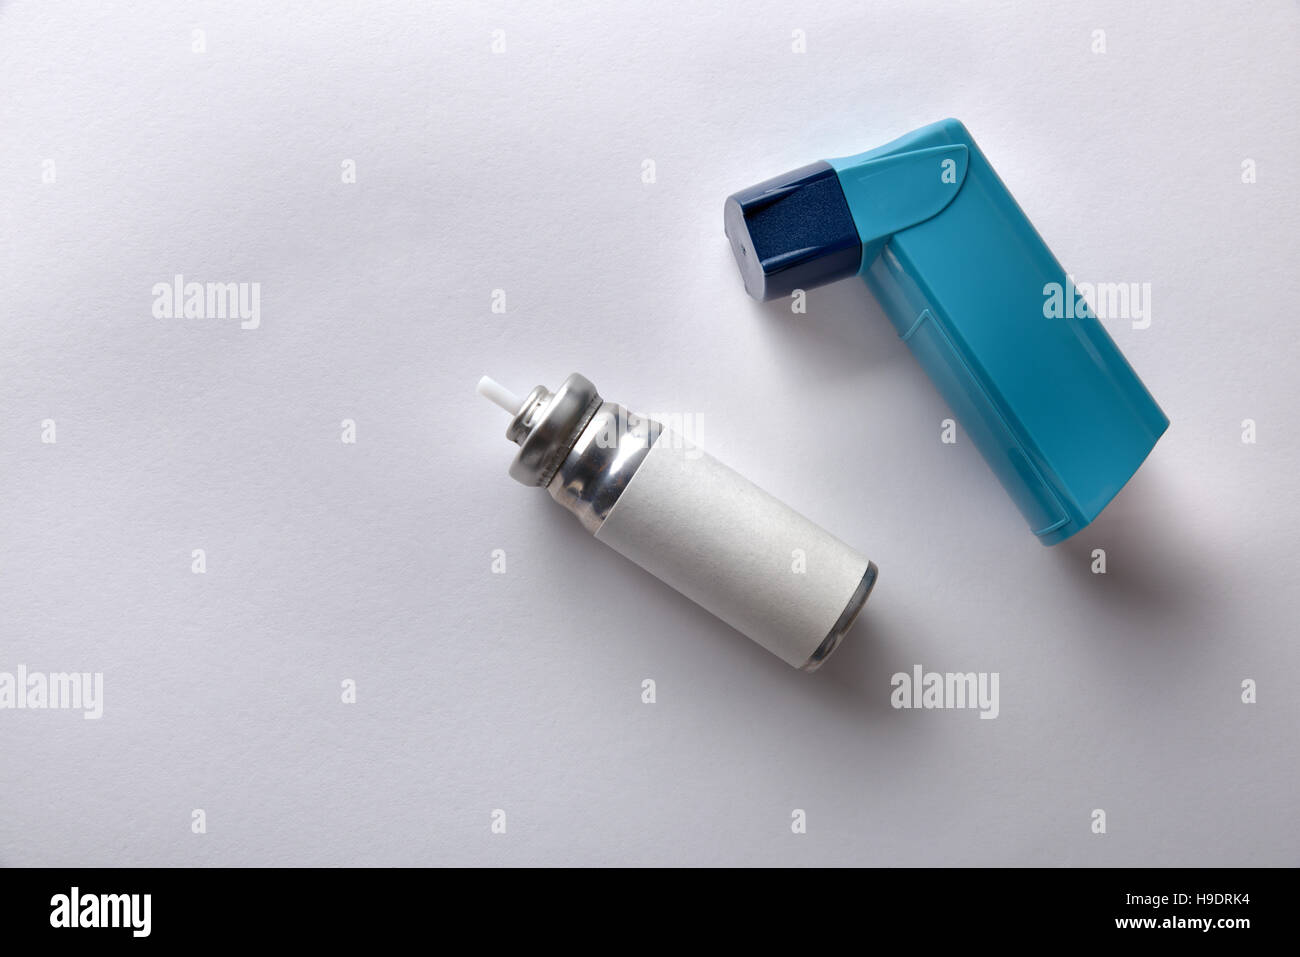 Patrone und blau Medizin Inhalator auf weißen Tisch. Ansicht von oben. Horizontale Komposition Stockfoto